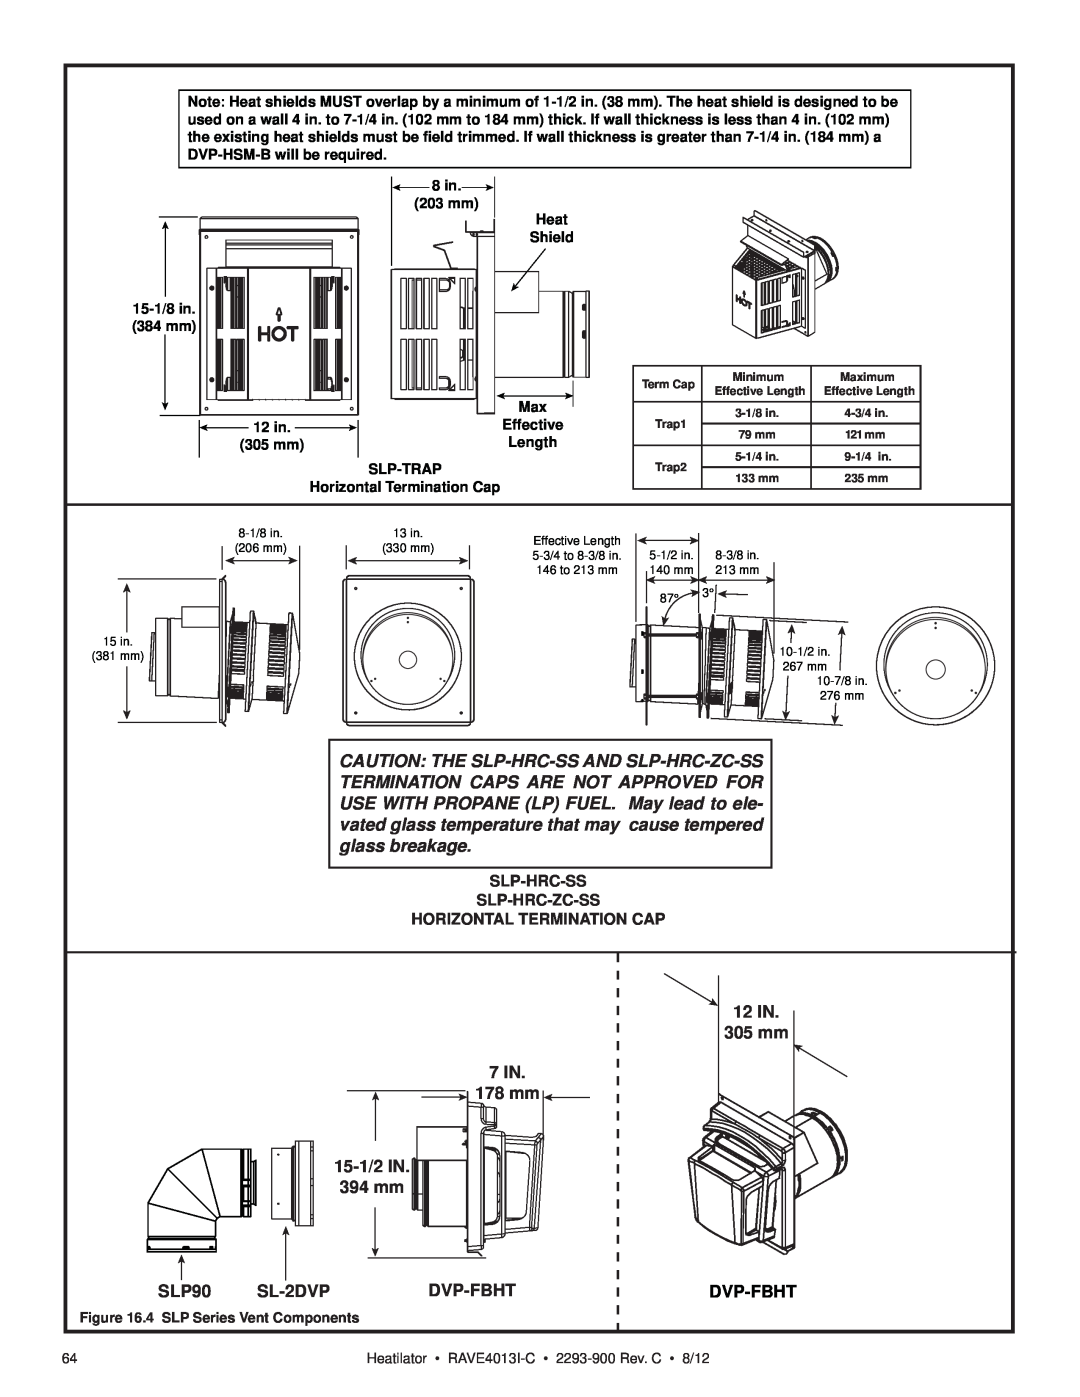 Heatiator Rave4013i-c 15-1/2IN 394 mm, 7 IN 178 mm, 12IN 305mm, SLP90, SL-2DVP, Dvp-Fbht, Slp-Hrc-Ss Slp-Hrc-Zc-Ss 